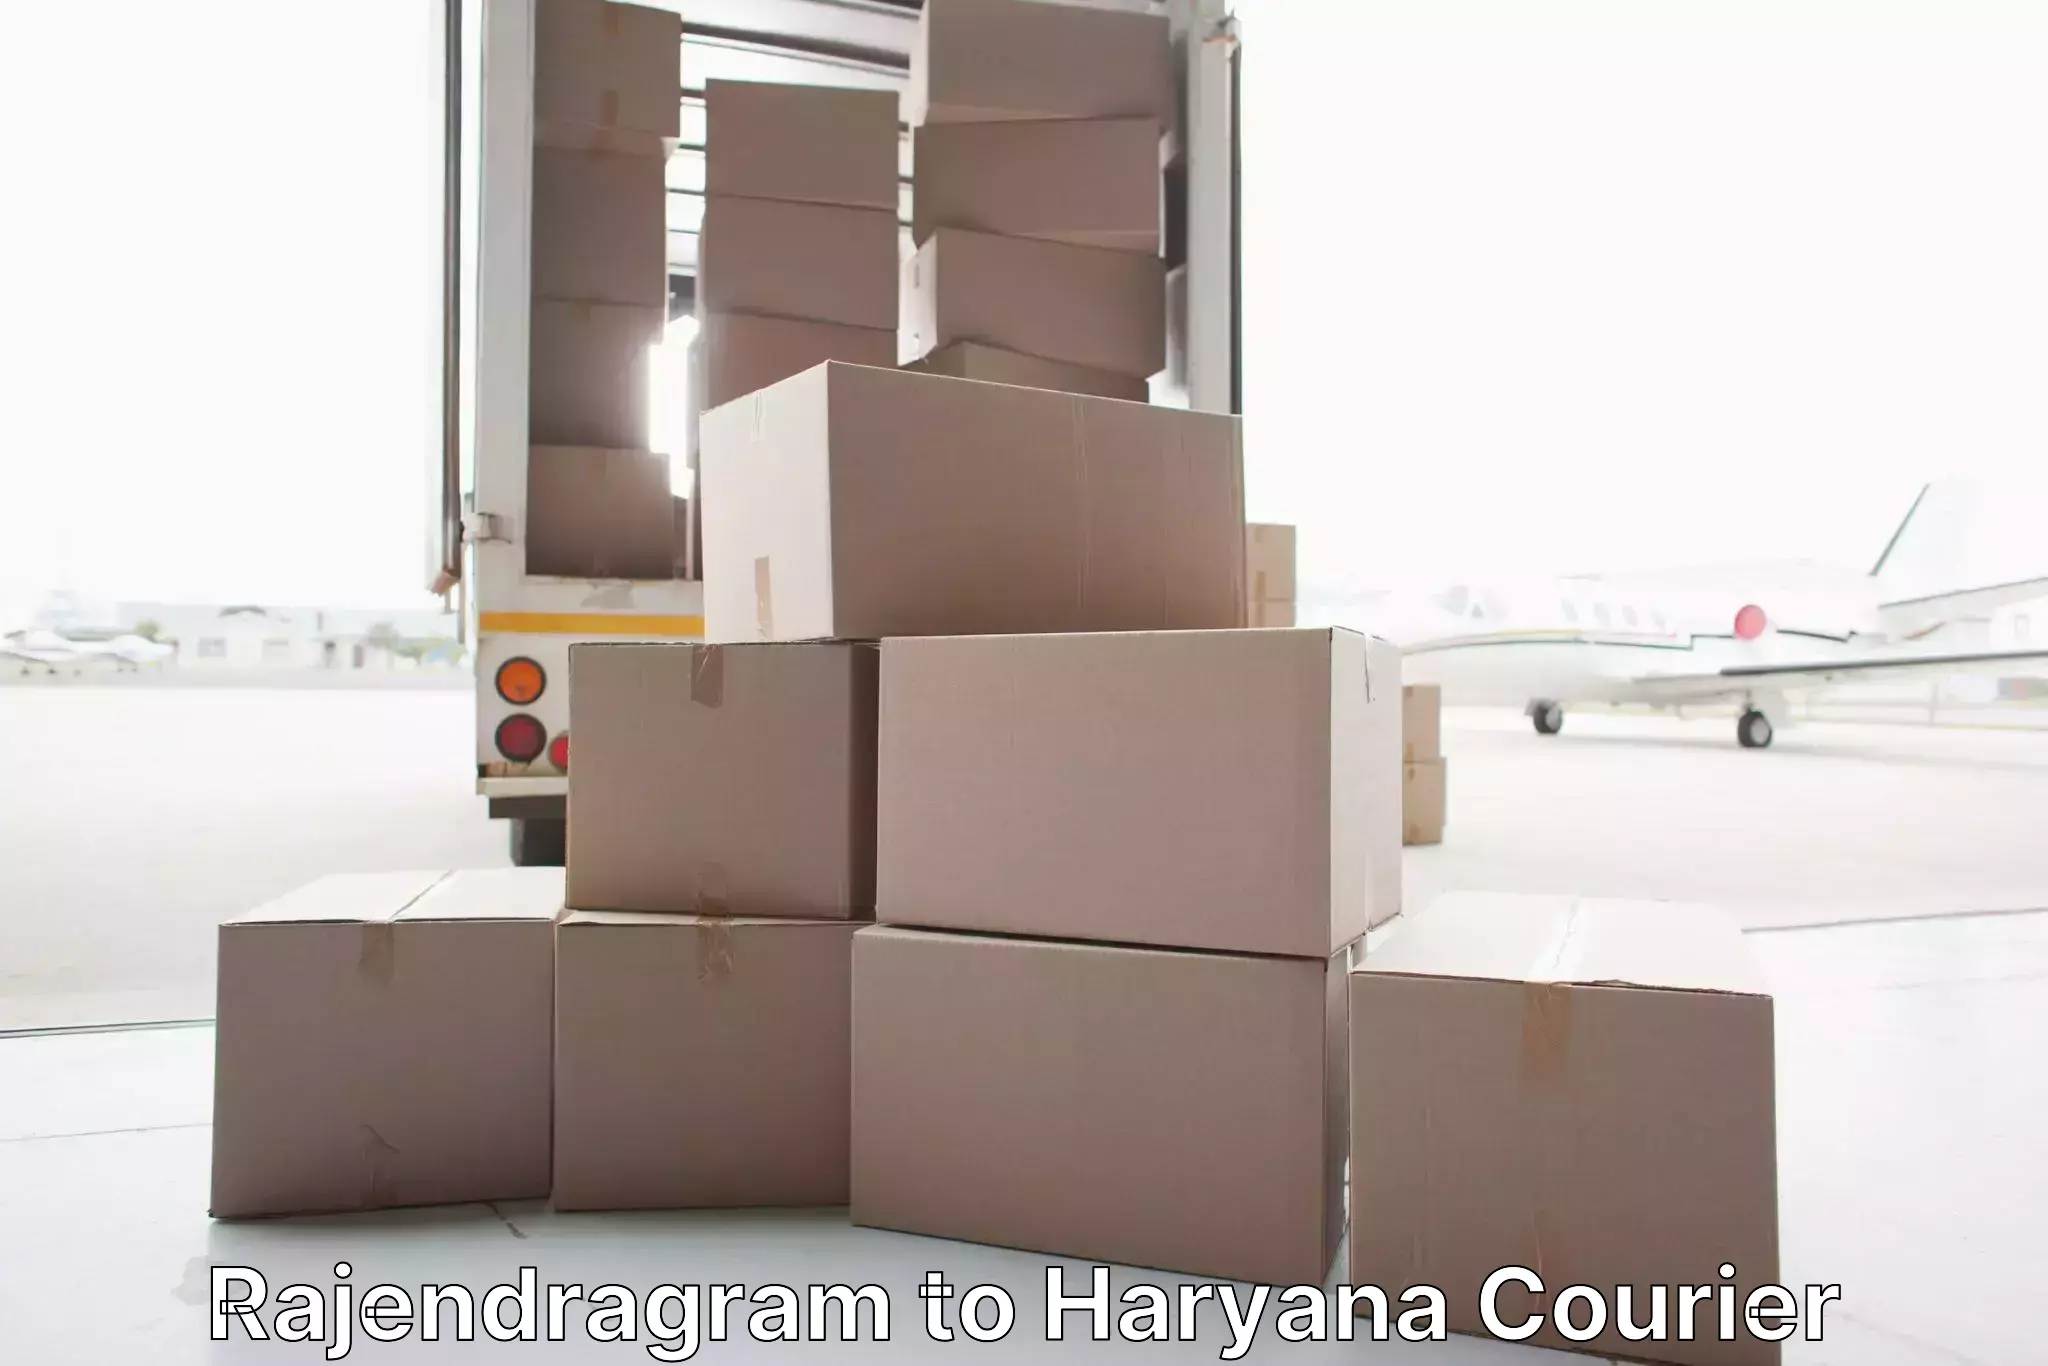 Dependable furniture transport Rajendragram to Kurukshetra